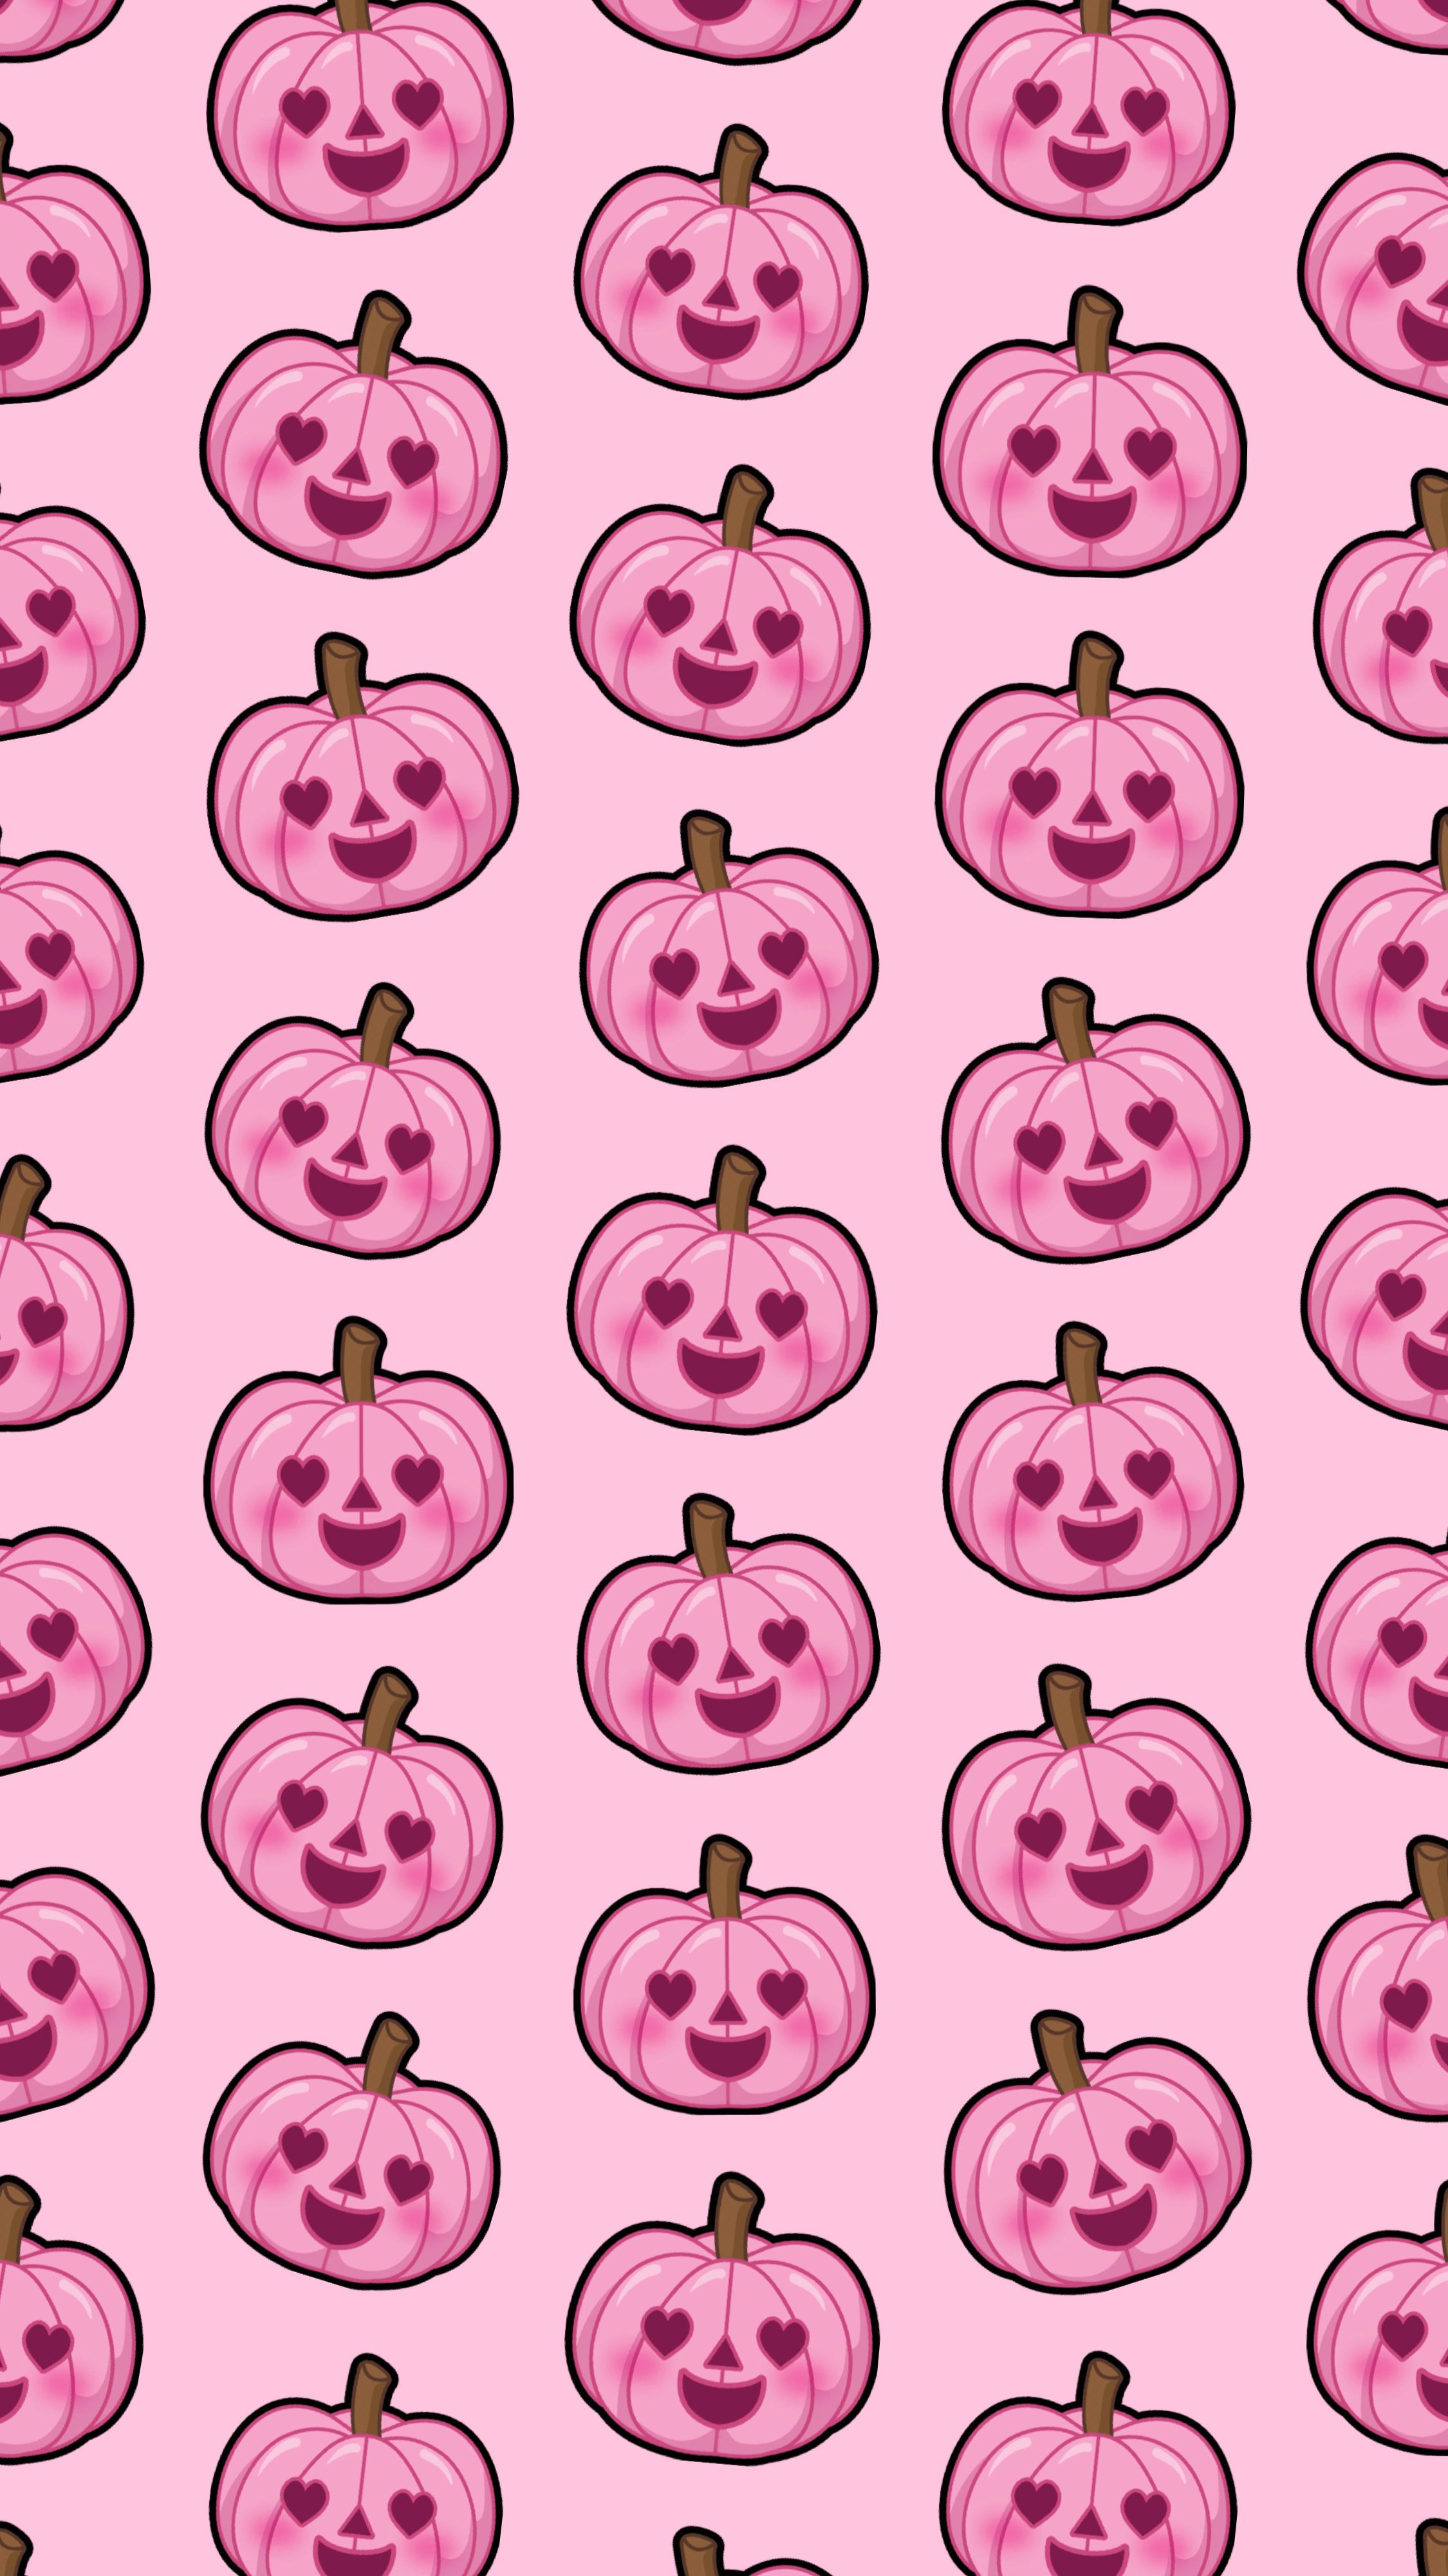 25 Pumpkin Wallpaper Ideas  White Pumpkin Pink Background  Idea Wallpapers   iPhone WallpapersColor Schemes